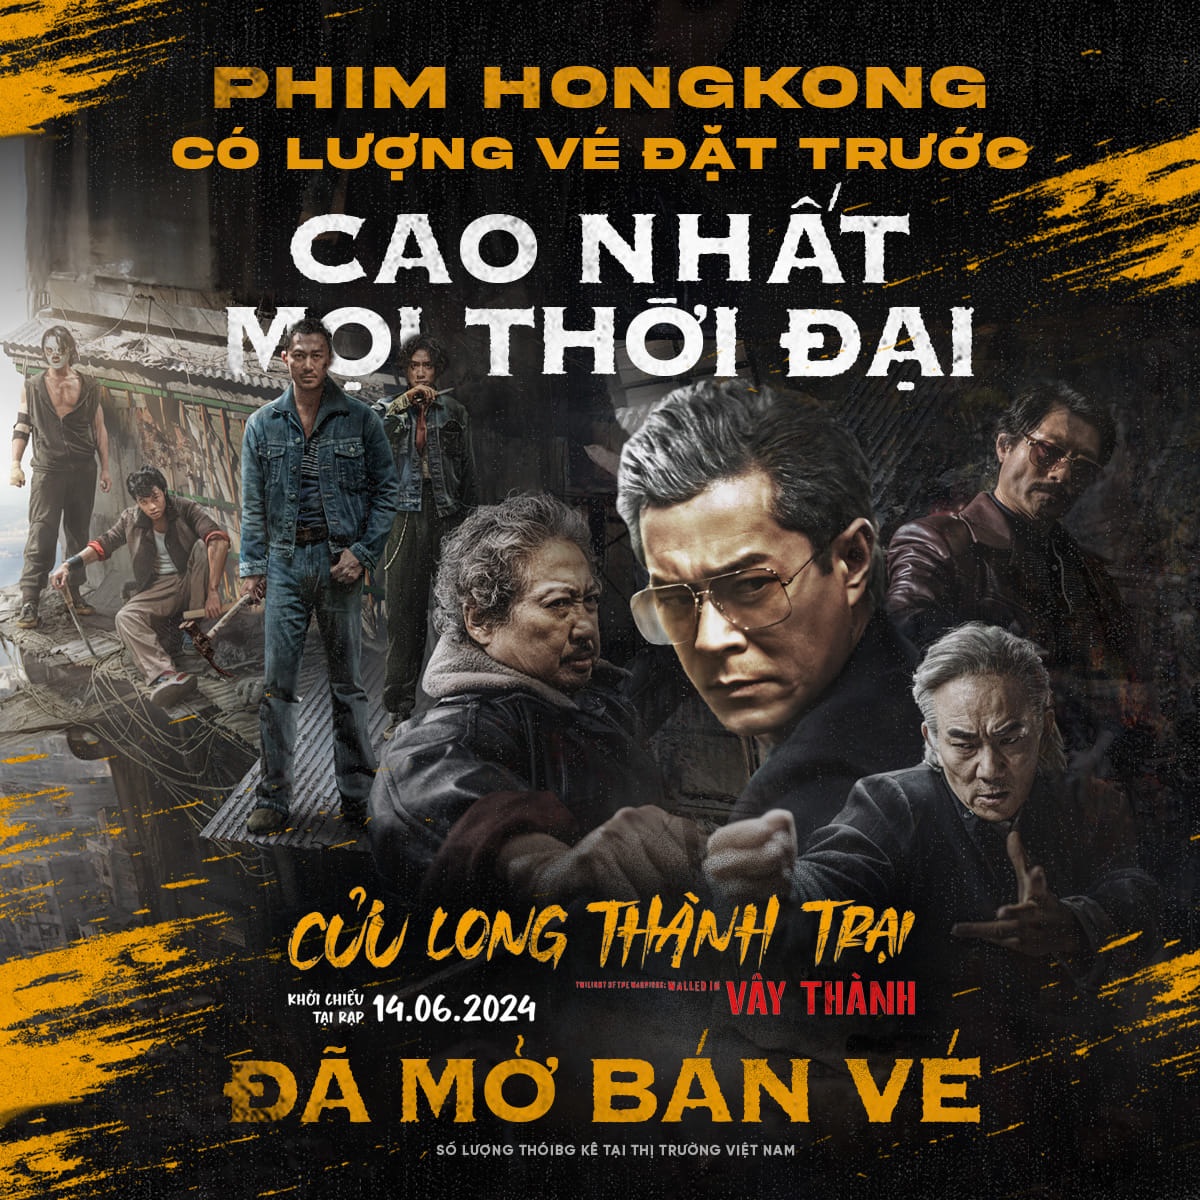 Phim 18+ Hong Kong được khán giả Việt ngóng chờ, còn lập kỷ lục cao nhất mọi thời đại - Ảnh 3.